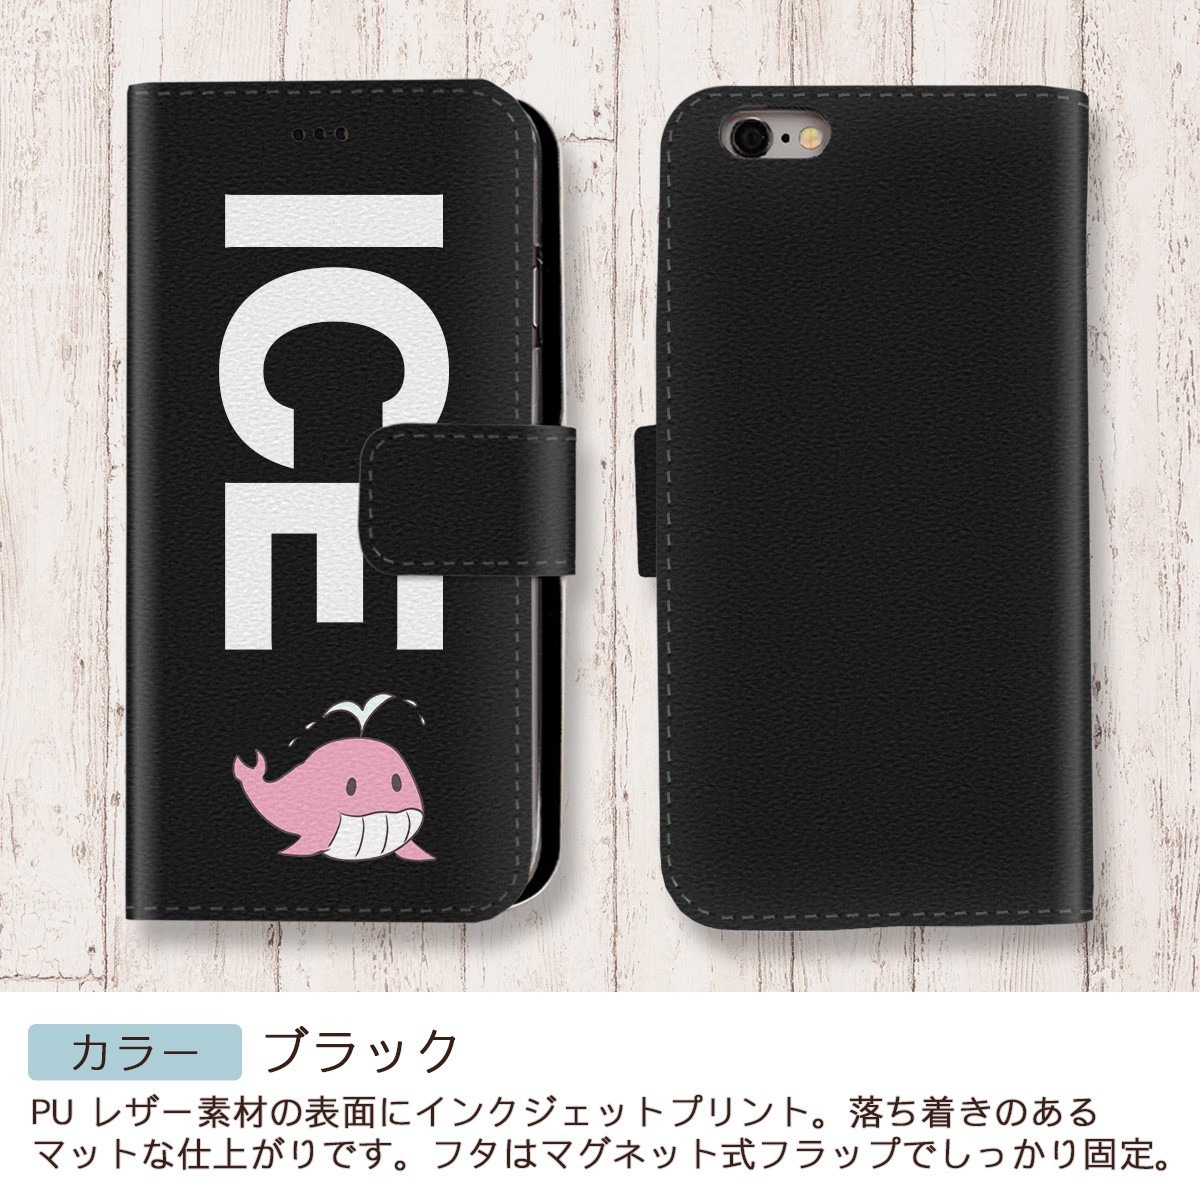 ピンク クジラ おもしろ X XSケース ケース iPhone X iPhone XS ケース 手帳型 アイフォン かわいい カッコイイ メンズ レディ_画像2